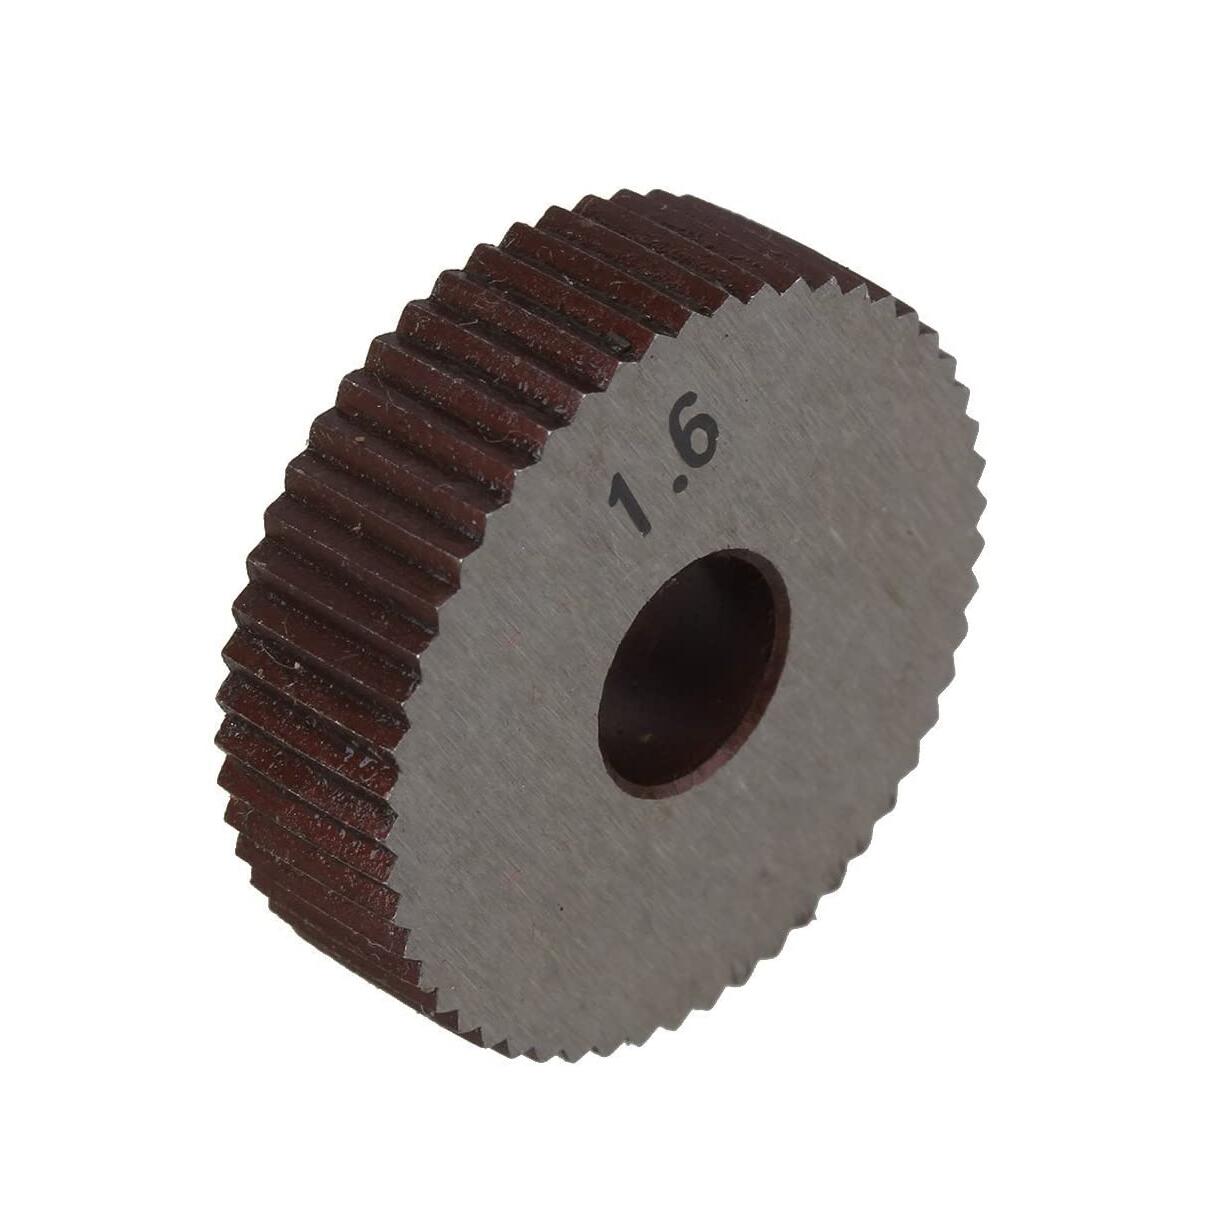 Rändelwerkzeug mit 0,6 mm Teilung und 28 mm Außendurchmesser, einzelnes gerades Rad